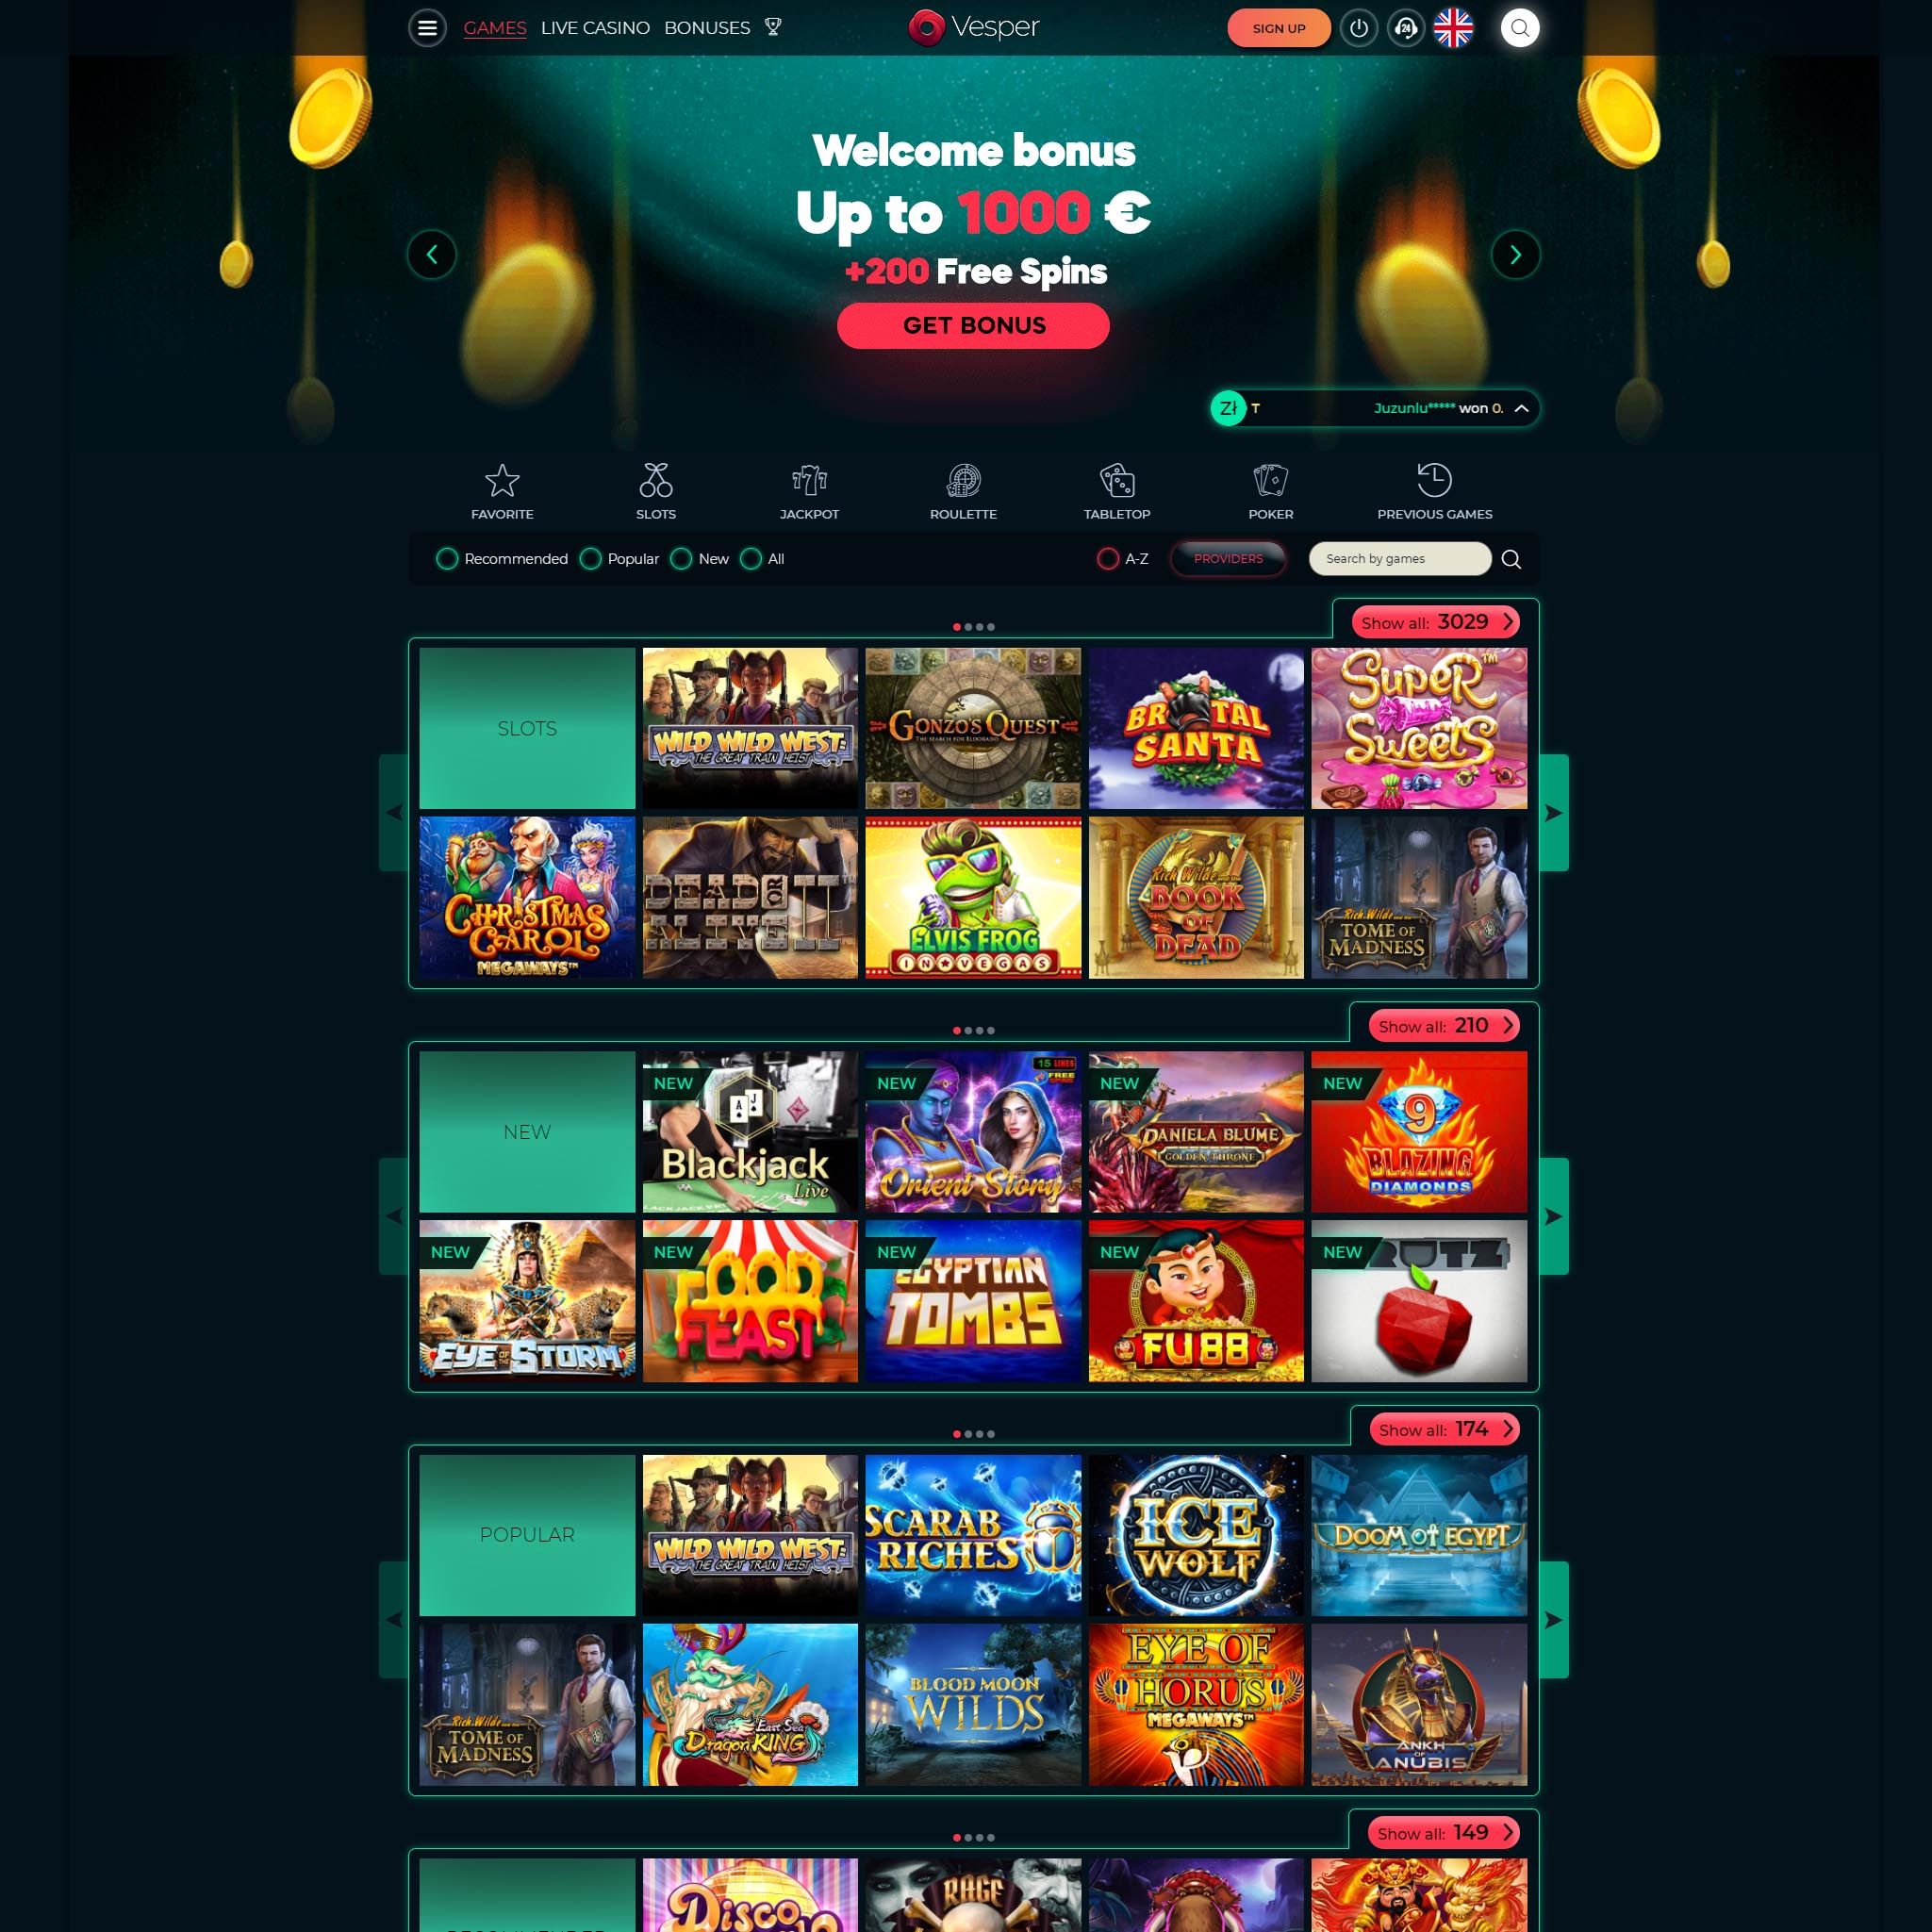 Pelaa netticasino Vesper Casino voittaaksesi oikeaa rahaa – oikean rahan online casino! Vertaa kaikki nettikasinot ja löydä parhaat casinot Suomessa.